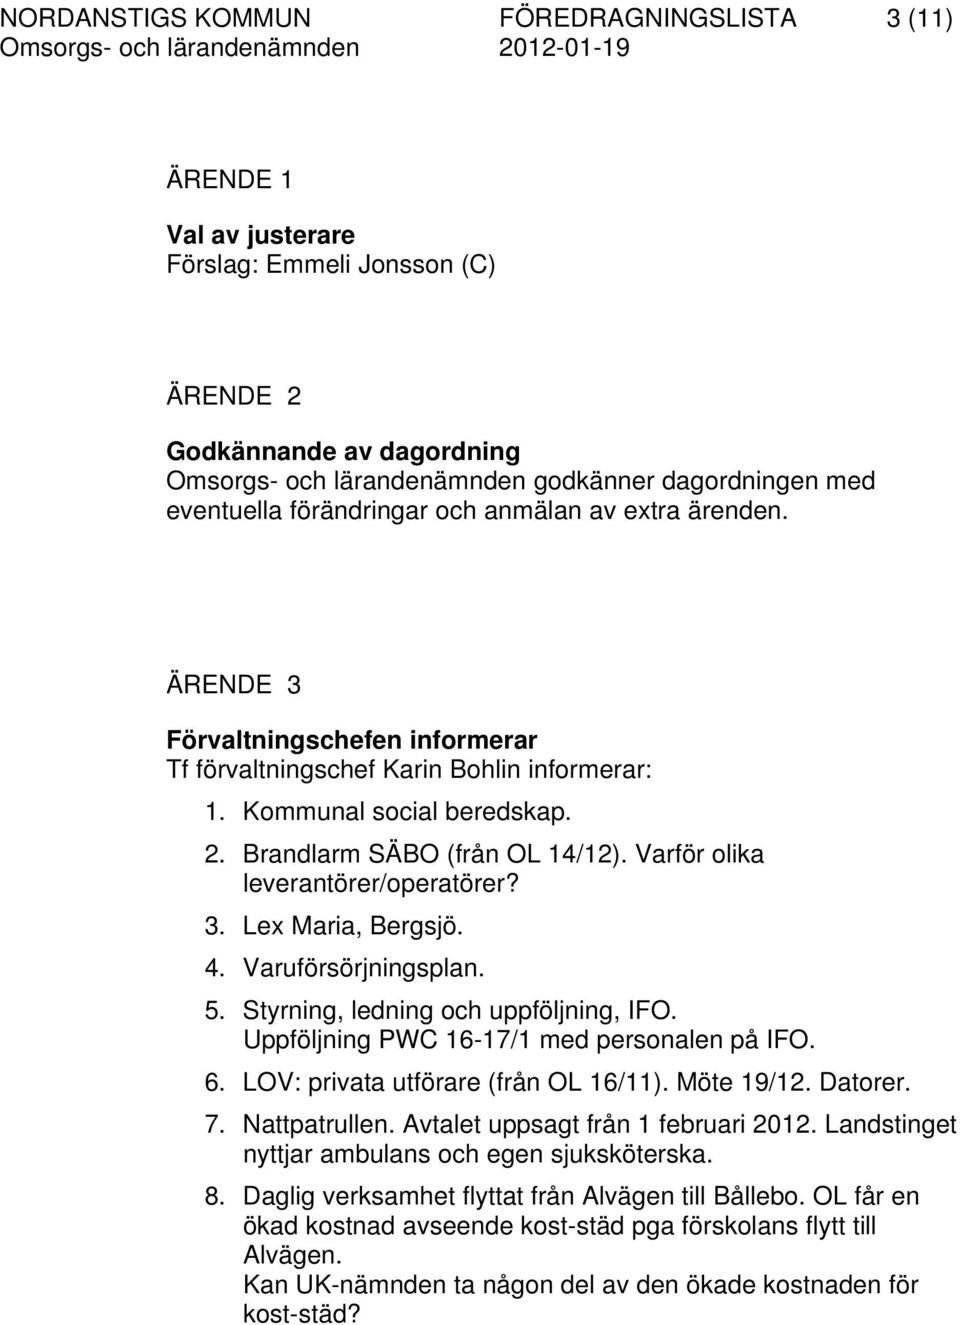 Varför olika leverantörer/operatörer? 3. Lex Maria, Bergsjö. 4. Varuförsörjningsplan. 5. Styrning, ledning och uppföljning, IFO. Uppföljning PWC 16-17/1 med personalen på IFO. 6.